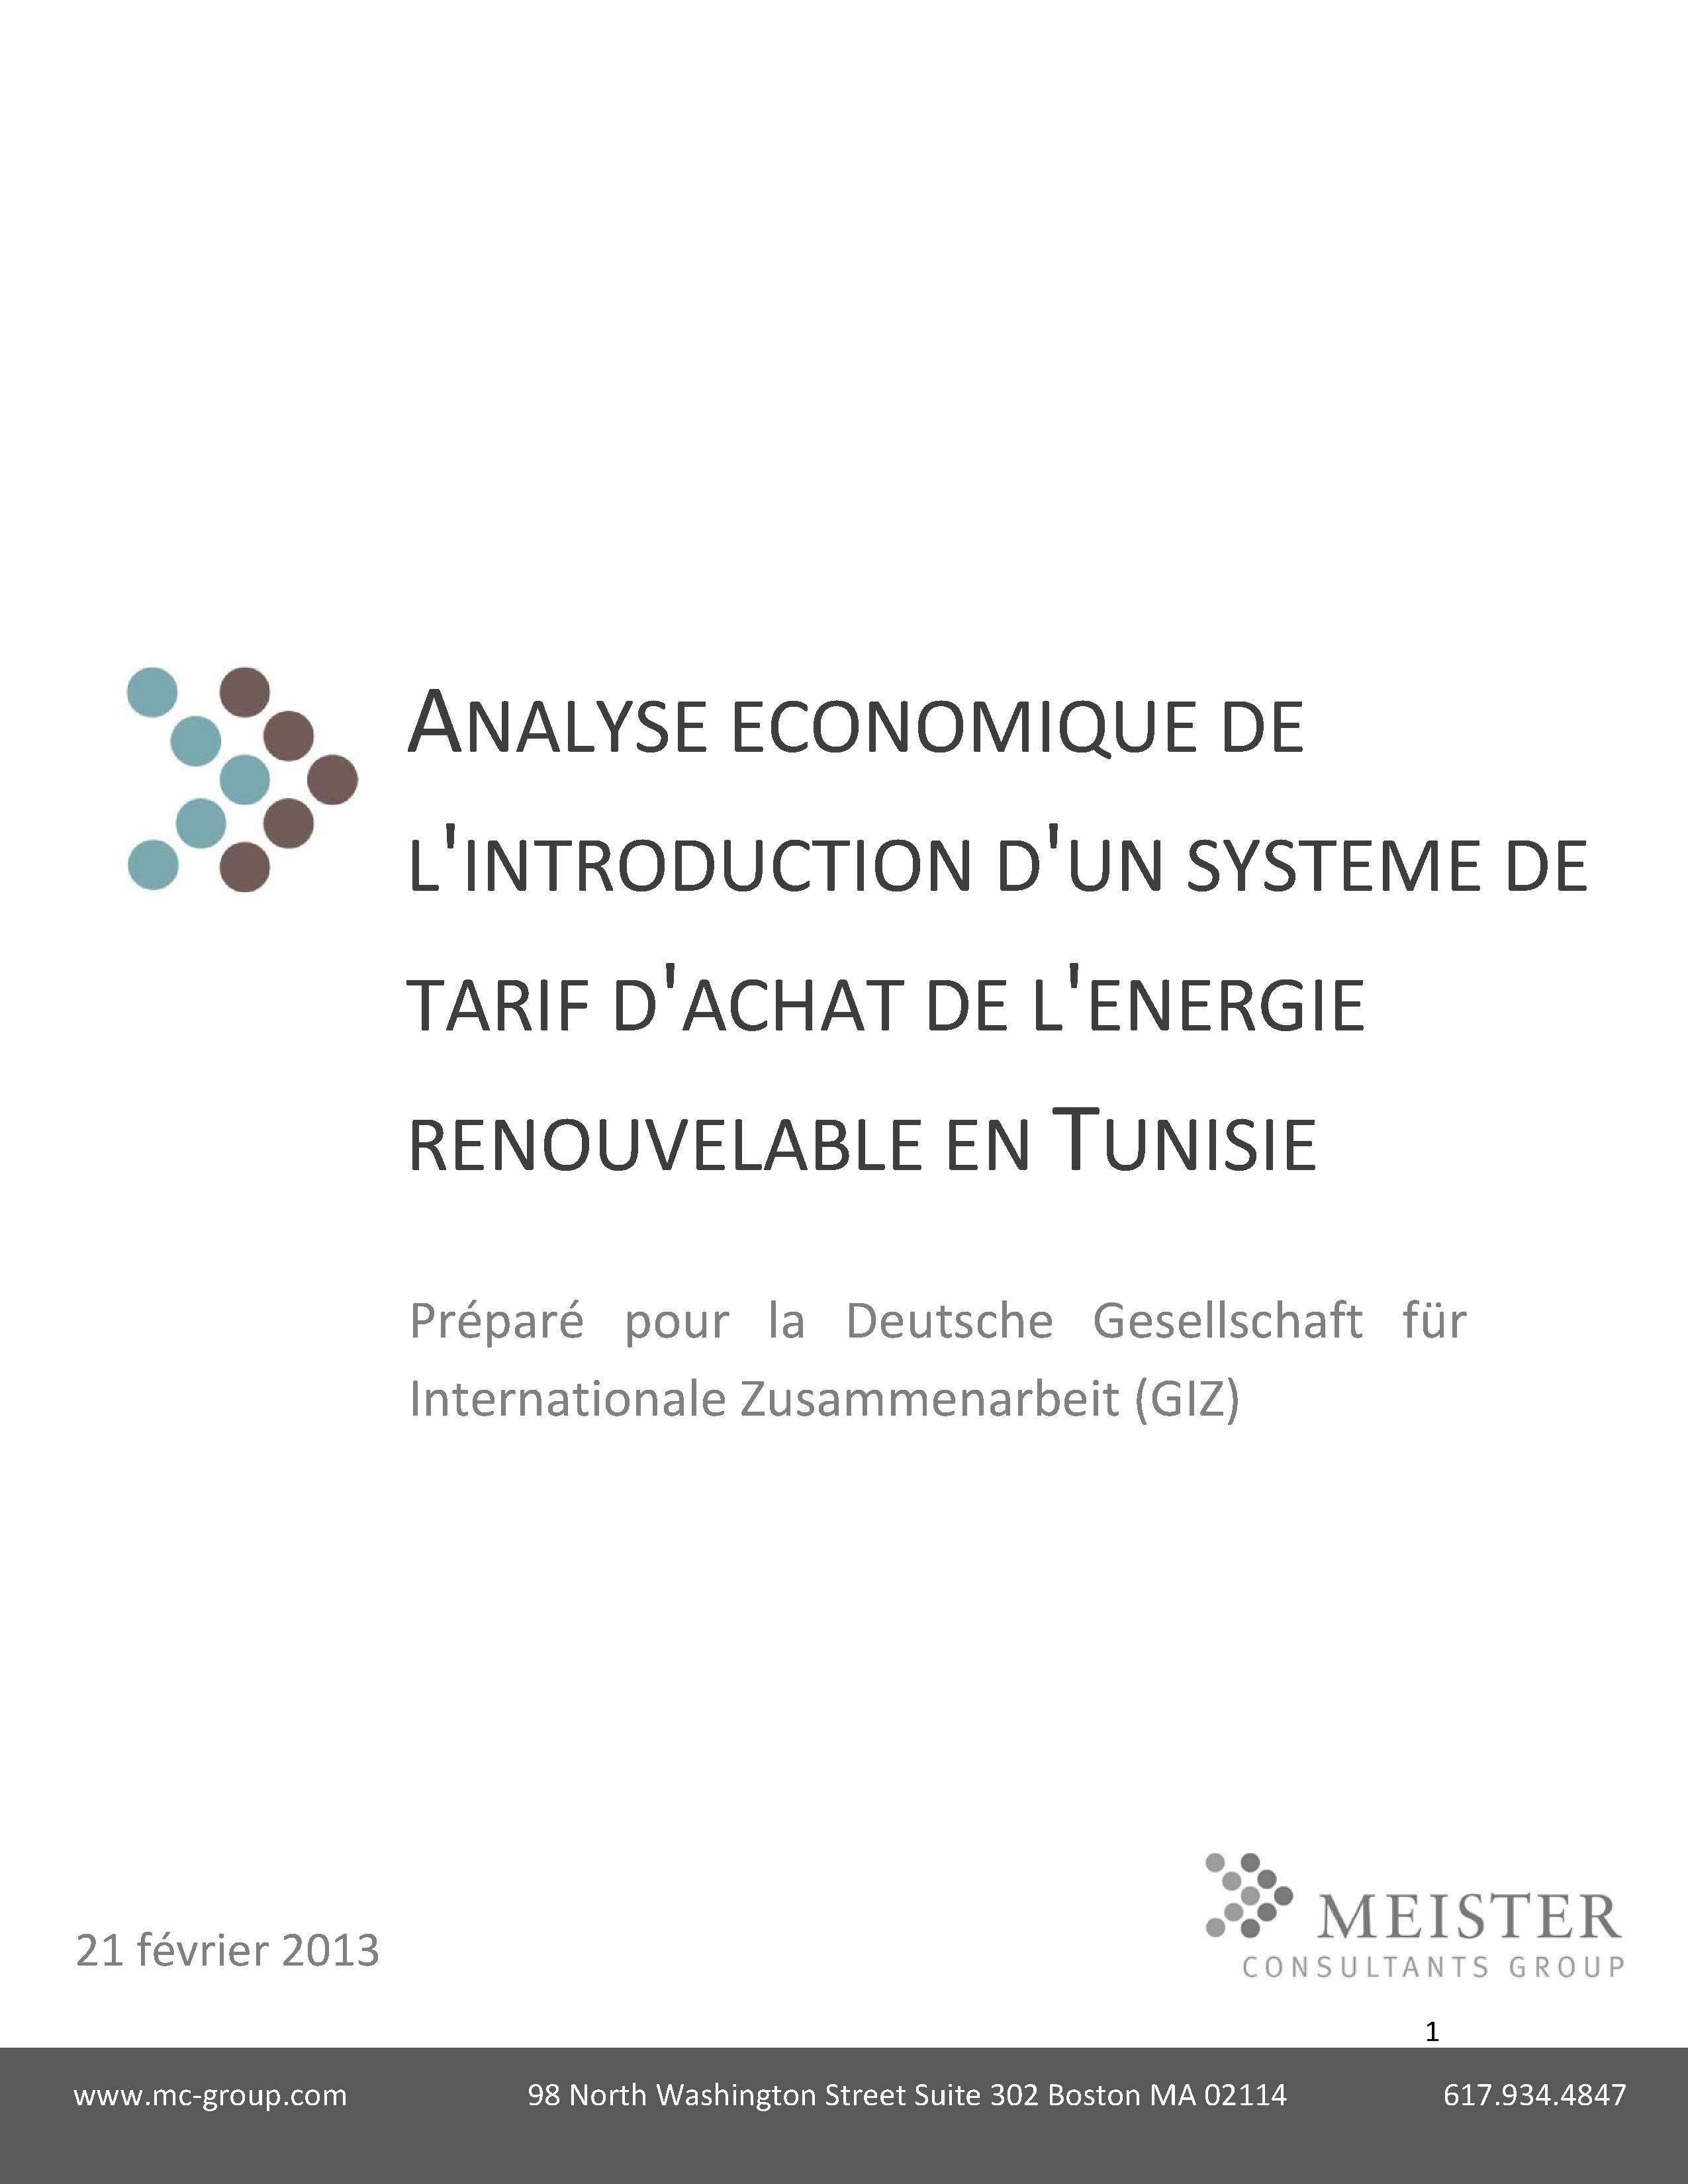 «Analyse économique de l'introduction d'un système de tarif d'achat de l'énergie renouvelable en Tunisie », Meister Consultant Group/GIZ (2013)